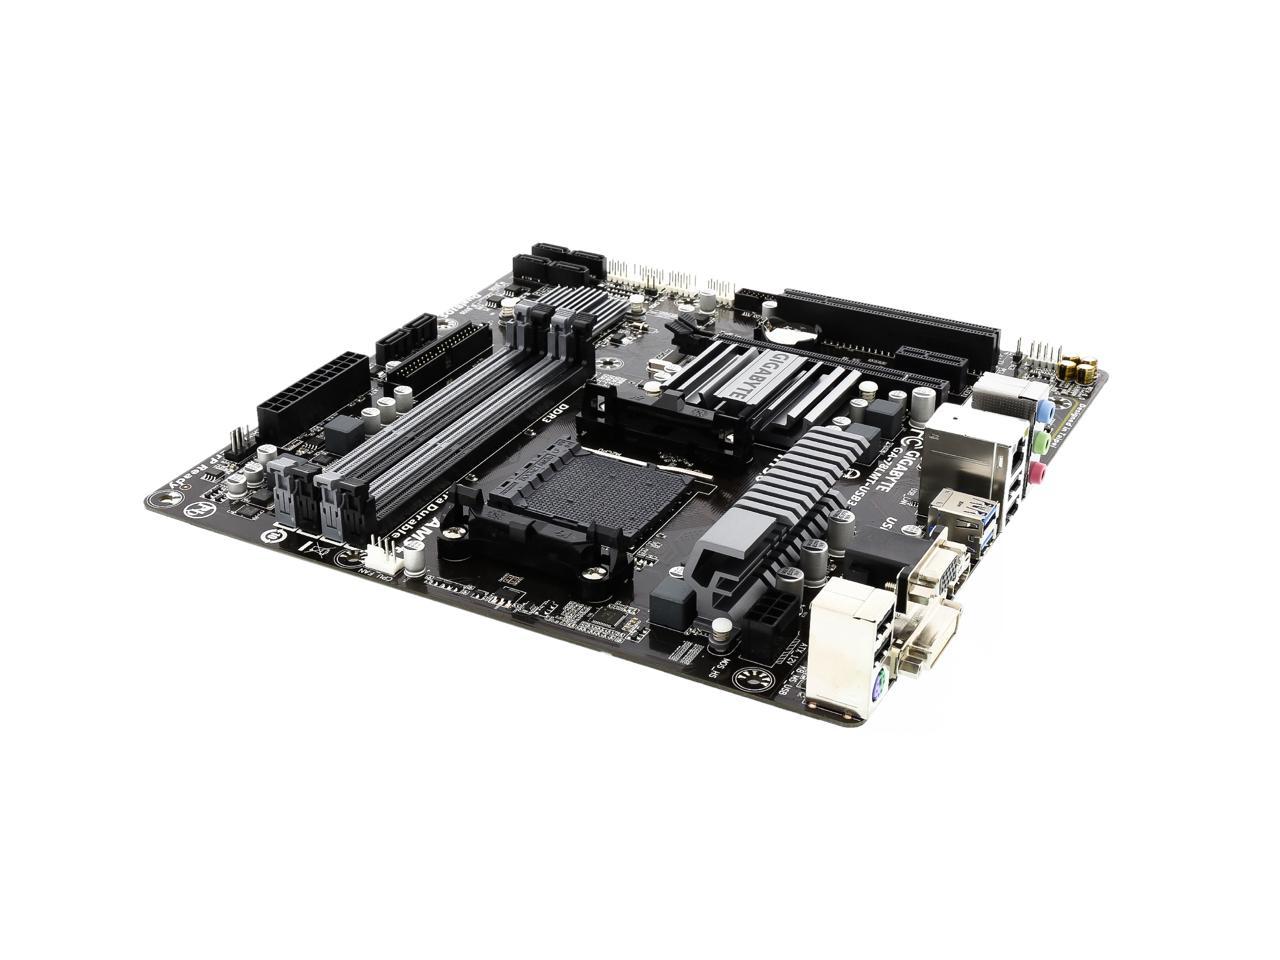 GIGABYTE GA-78LMT-USB3 (rev. 6.0) AM3+/AM3 Micro ATX AMD Motherboard